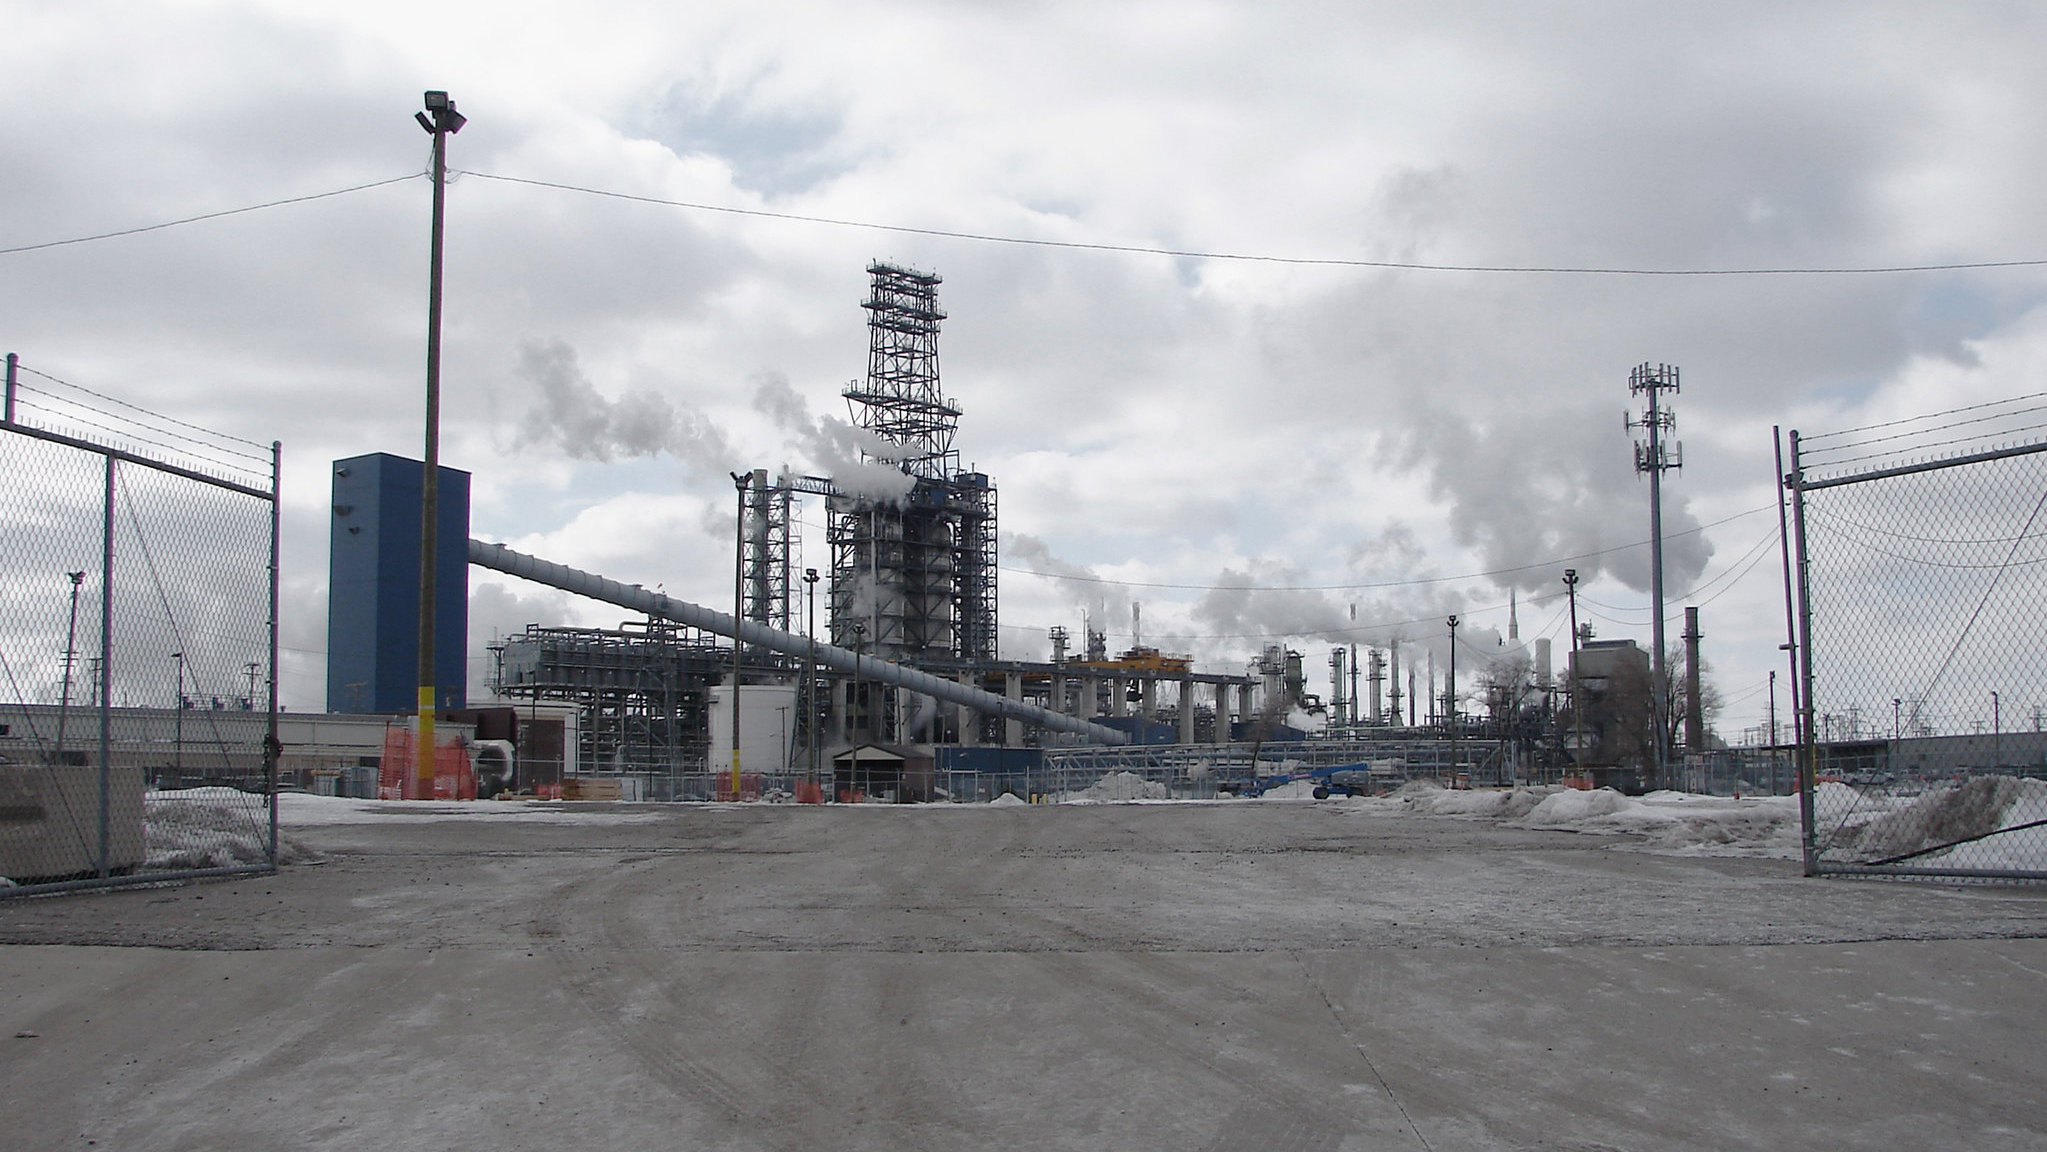 Marathon oil refinery in Detroit.